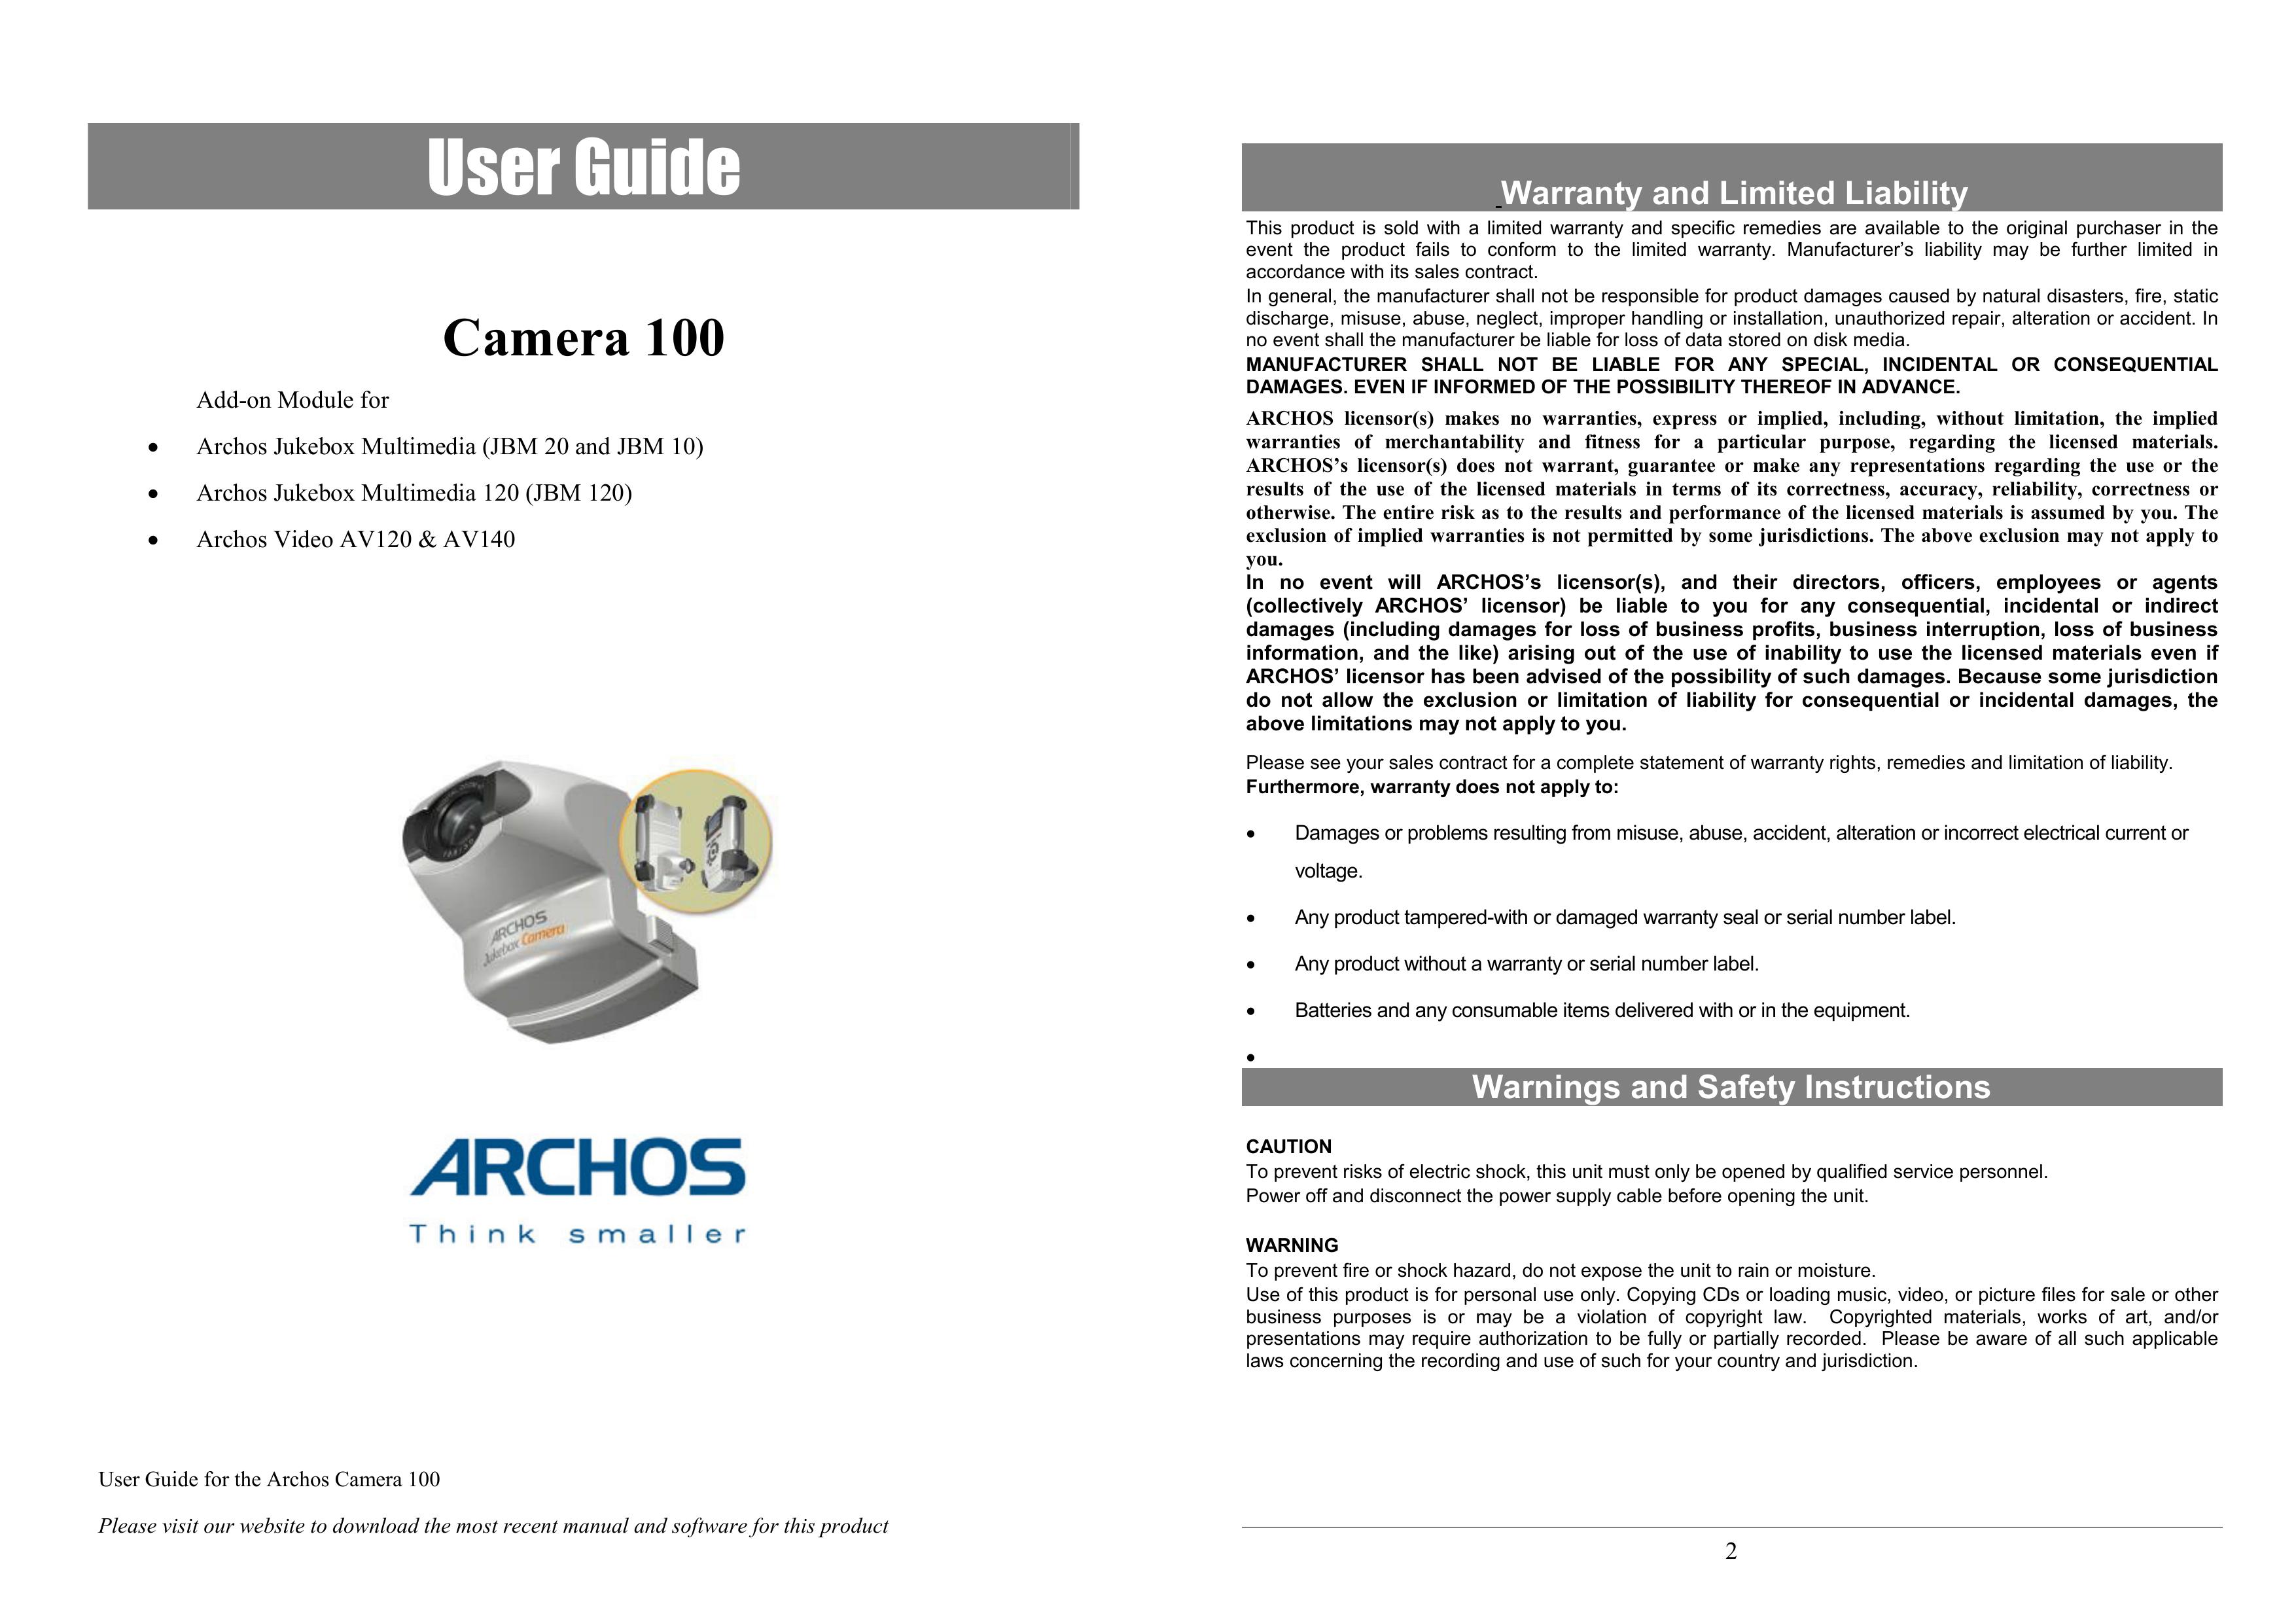 Archos JBM 10 Digital Camera User Manual